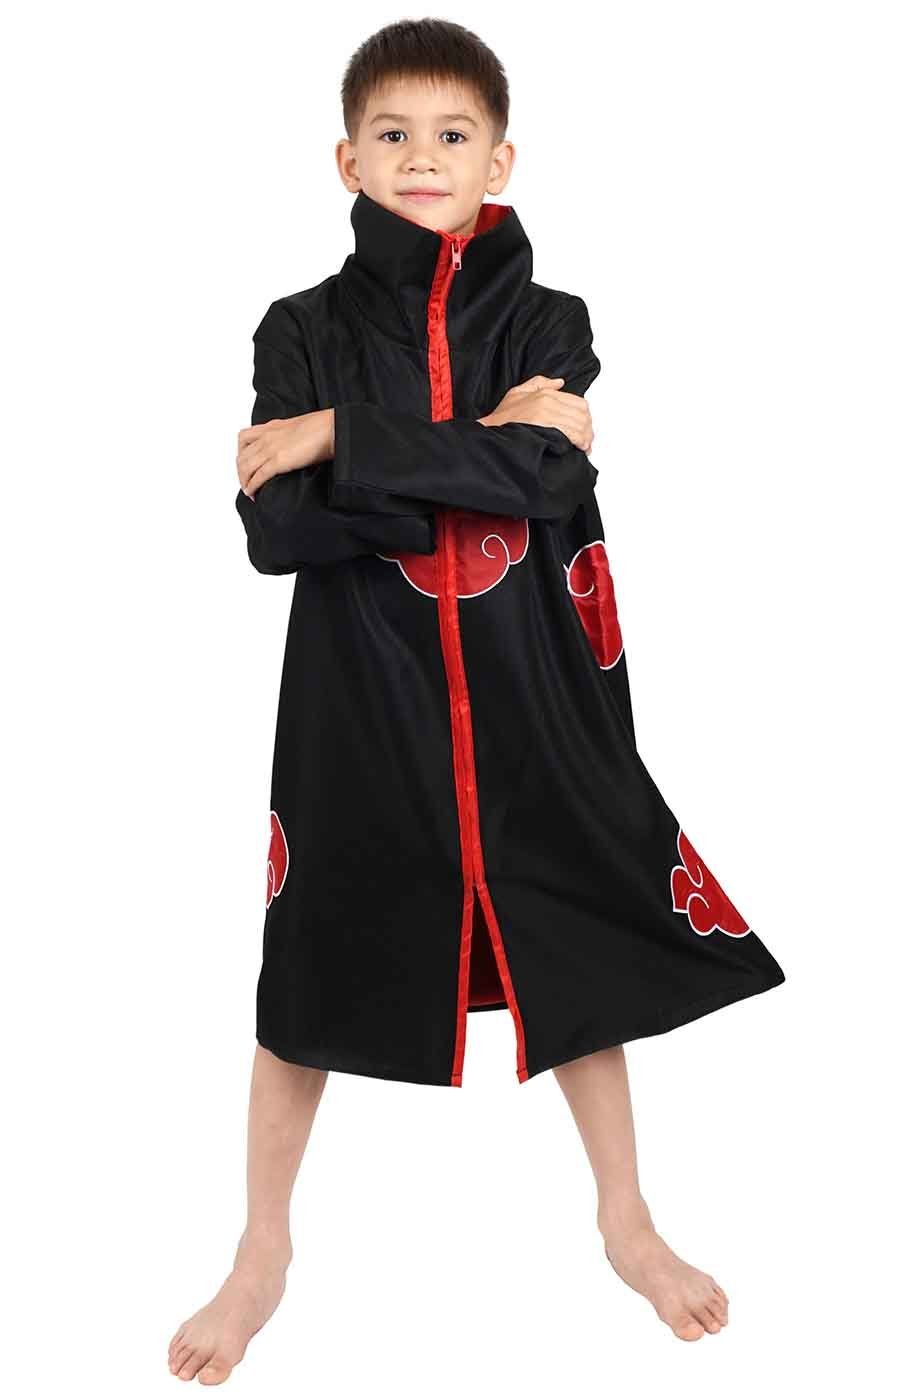 GalaxyCat Kostüm Akatsuki Mantel für Kinder, Itachi Cosplay Kostüm, Größen: 130, Akatsuki Mantel für Kinder Kostüm